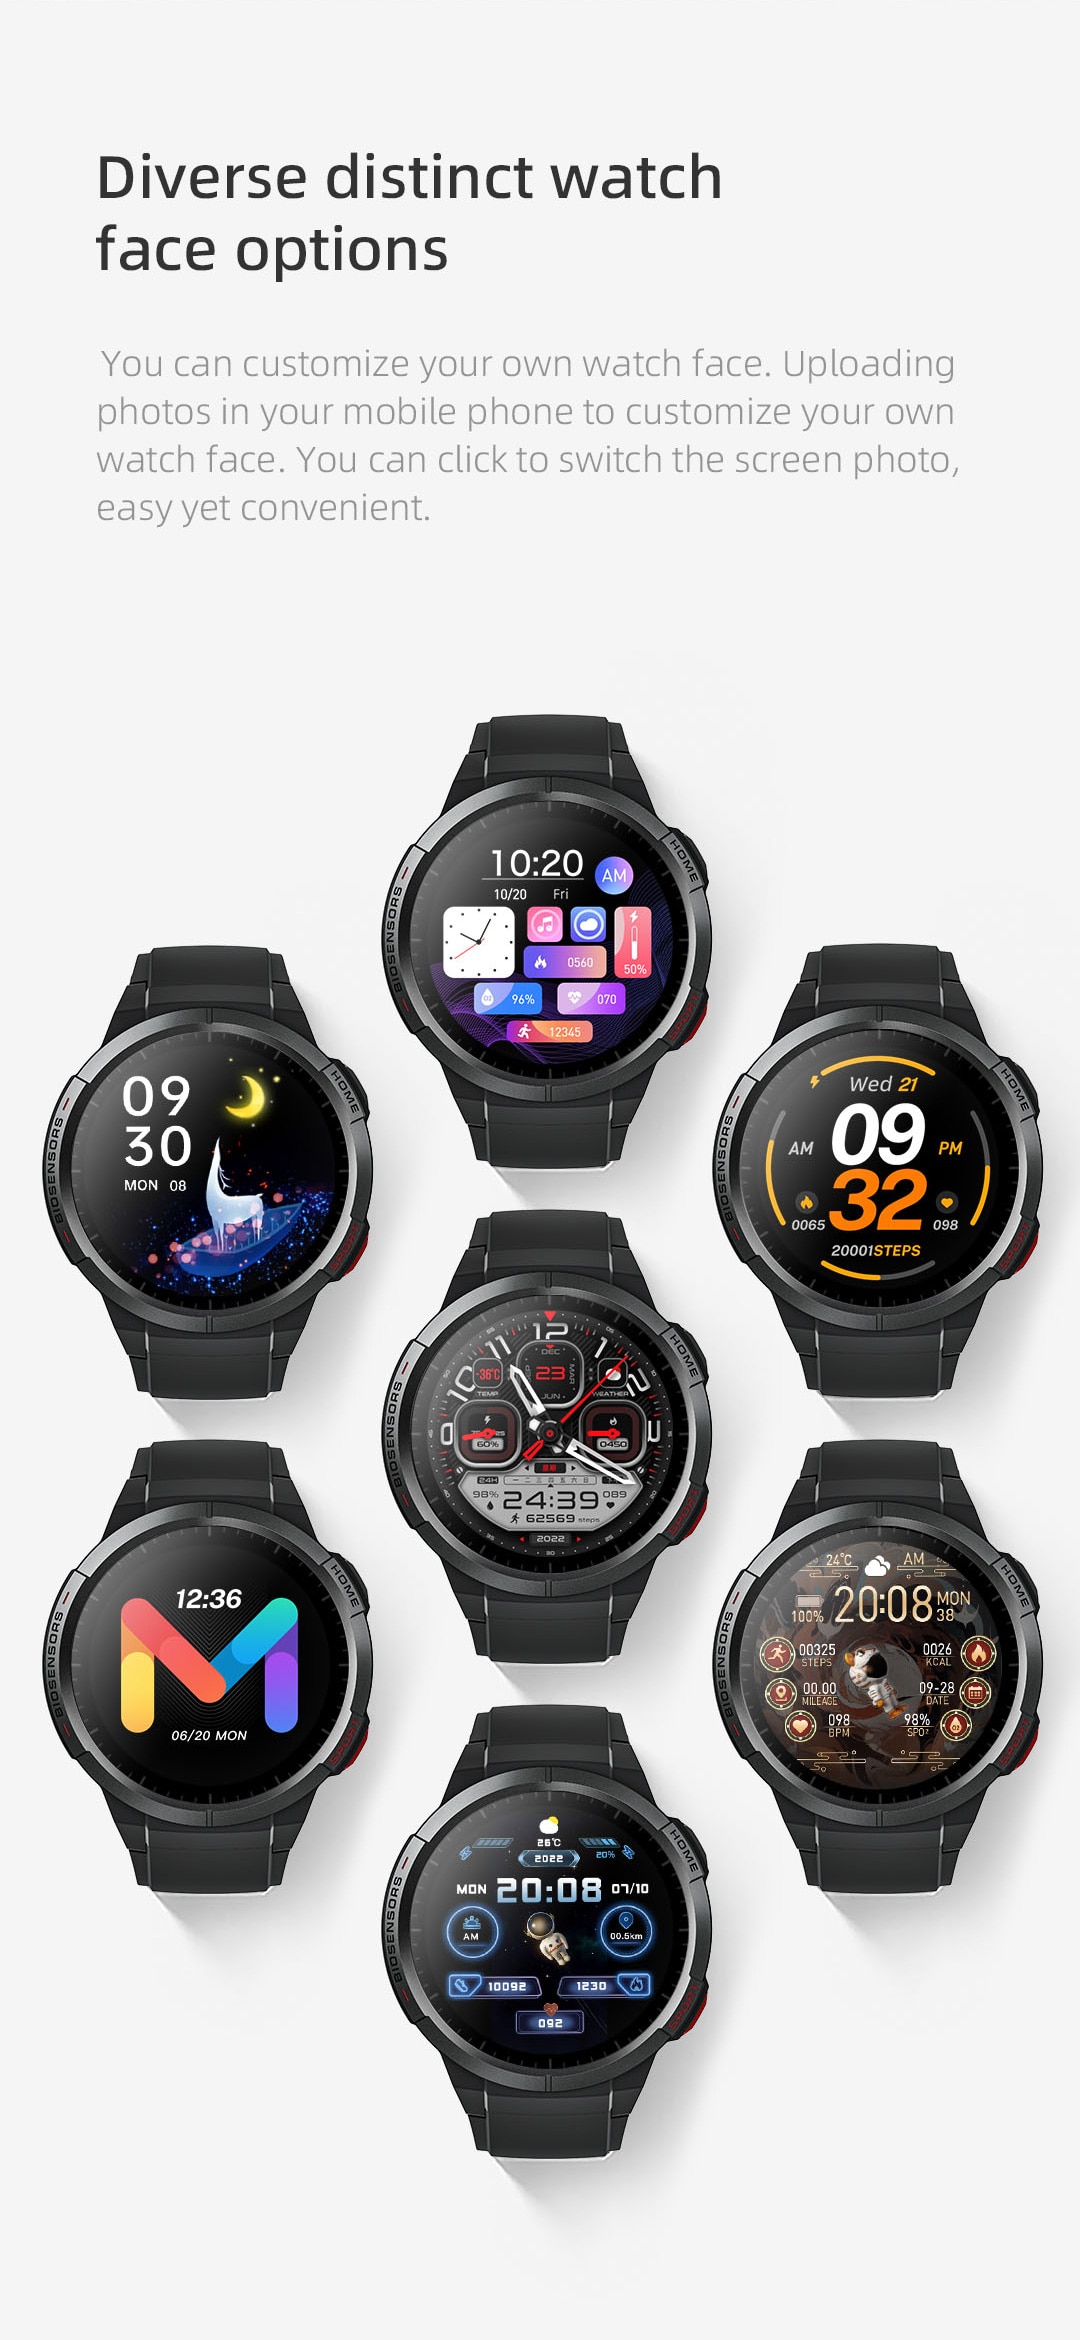 Mibro Watch GS